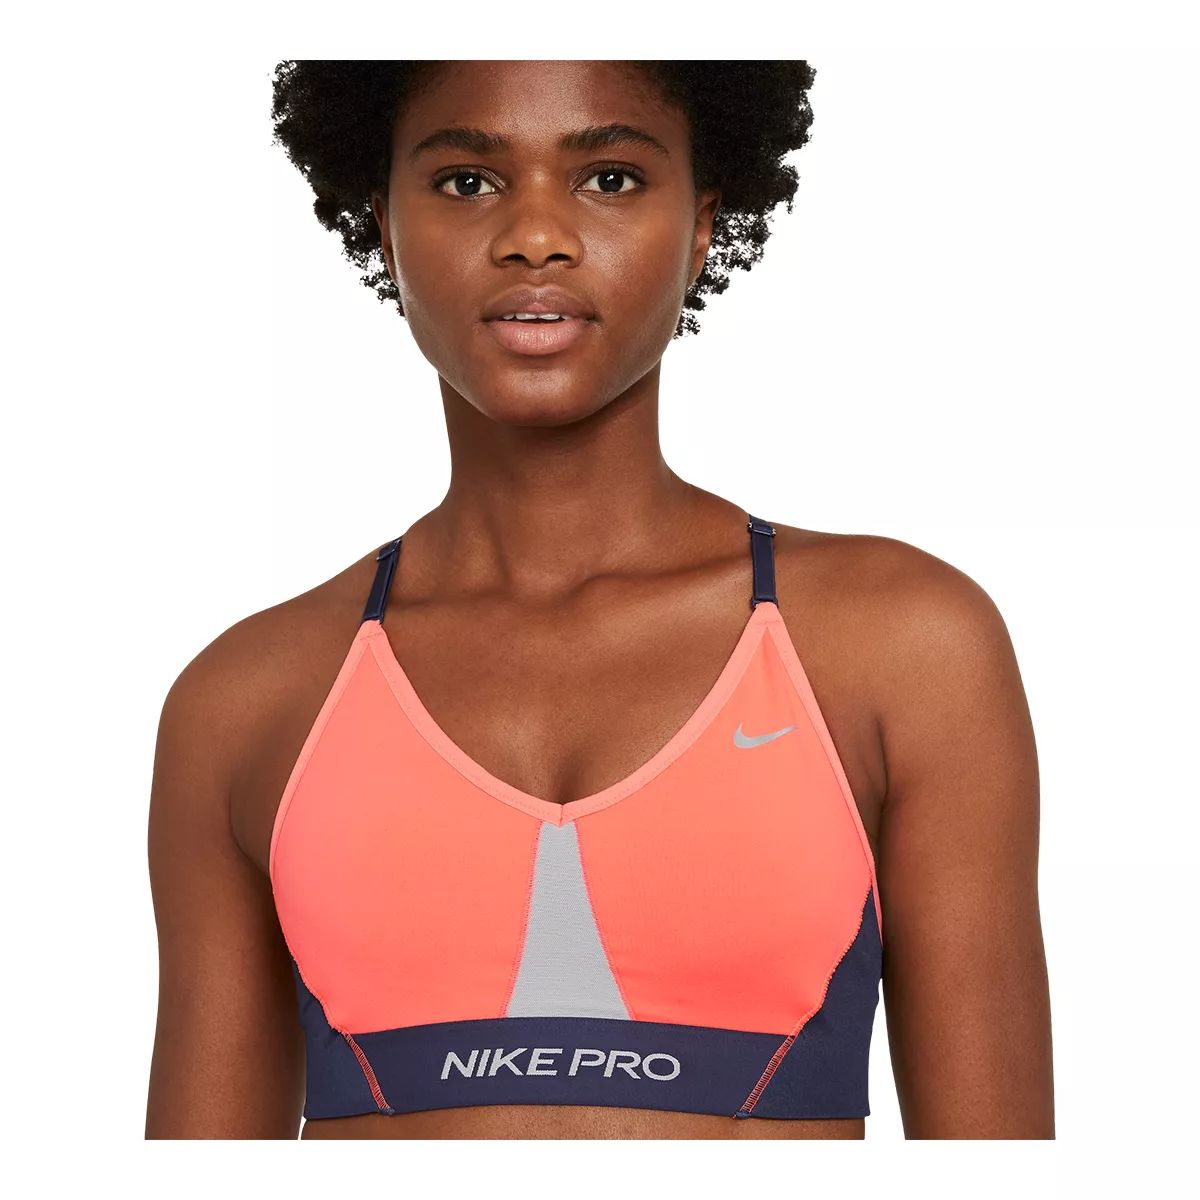 Nike Women's Pro Luxe Indy Sports Bra, Low Impact